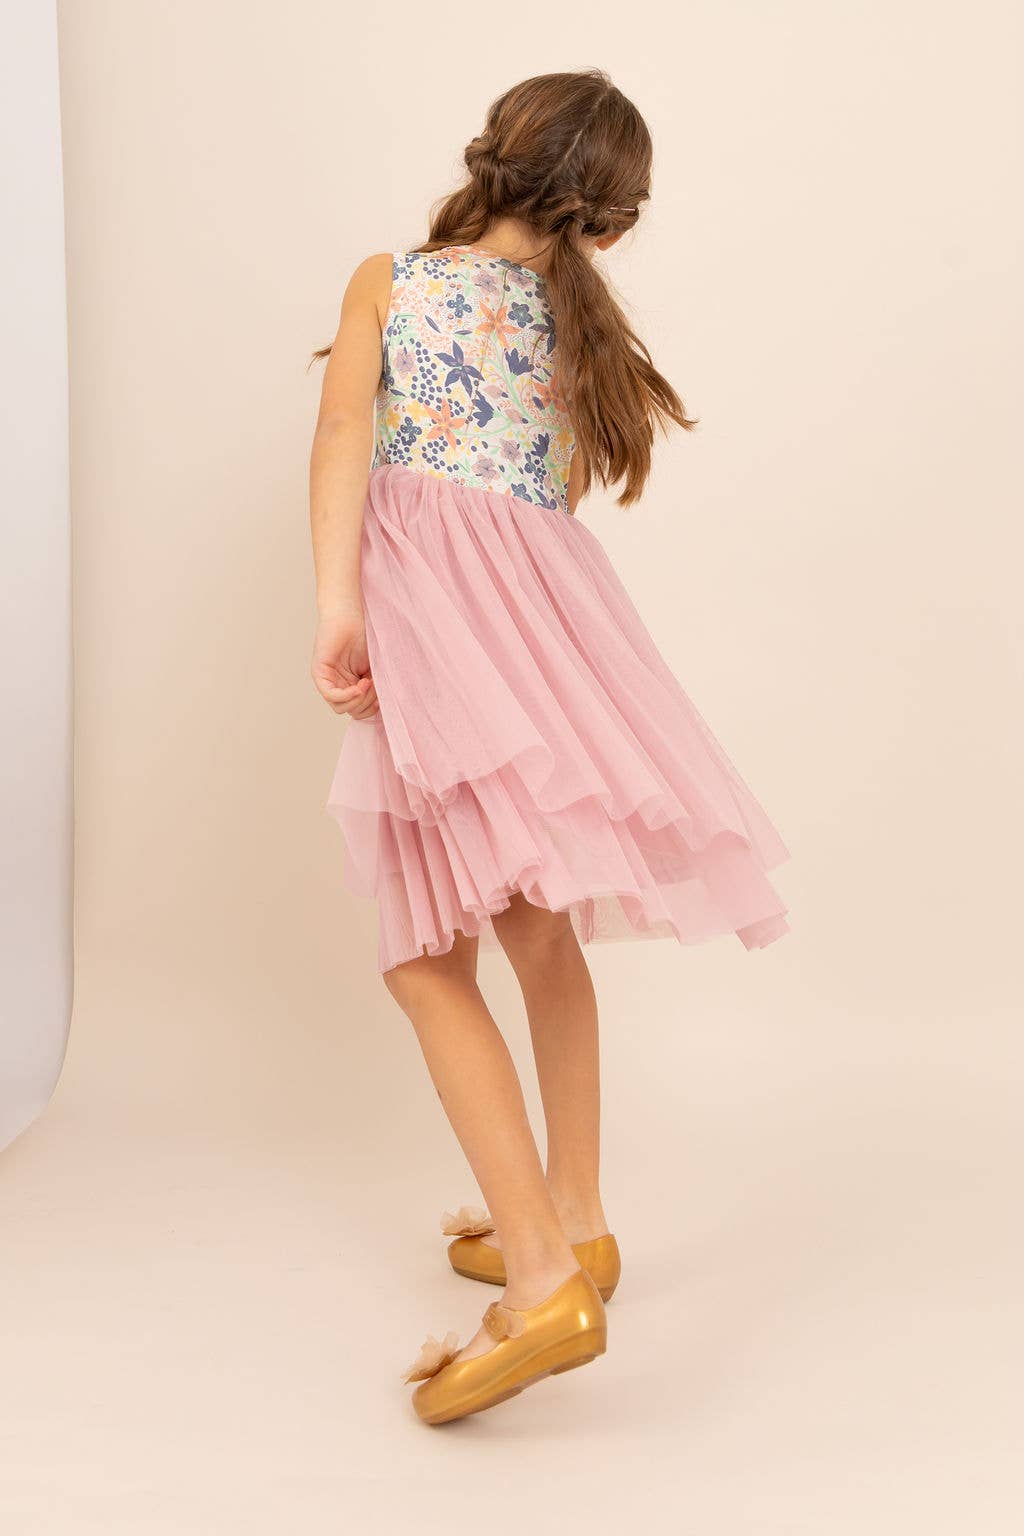 Bird & Bean® - Kids Bamboo Tulle Dress - Meadow - Kids Easter Dress